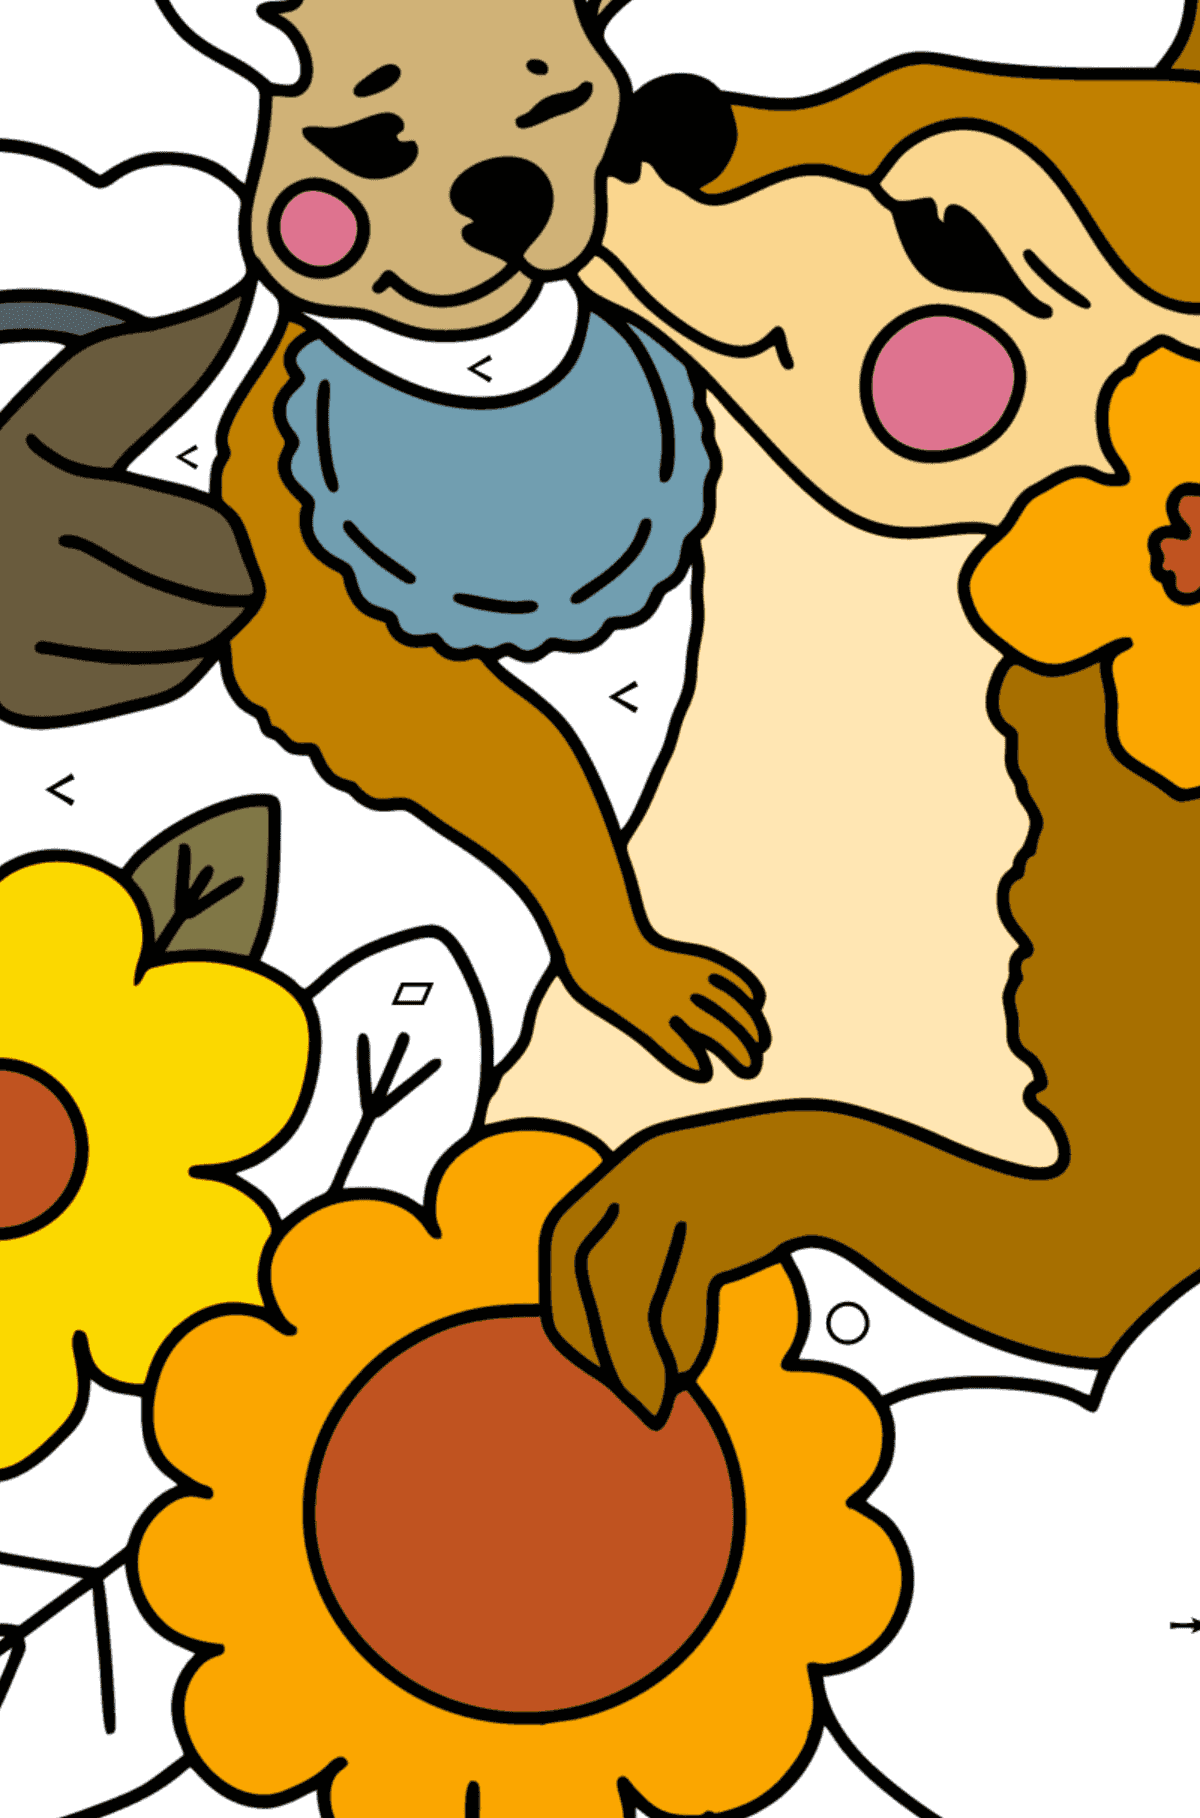 Kolorowanka Kartka na Dzień Matki Kangura - Kolorowanie według symboli i figur geometrycznych dla dzieci